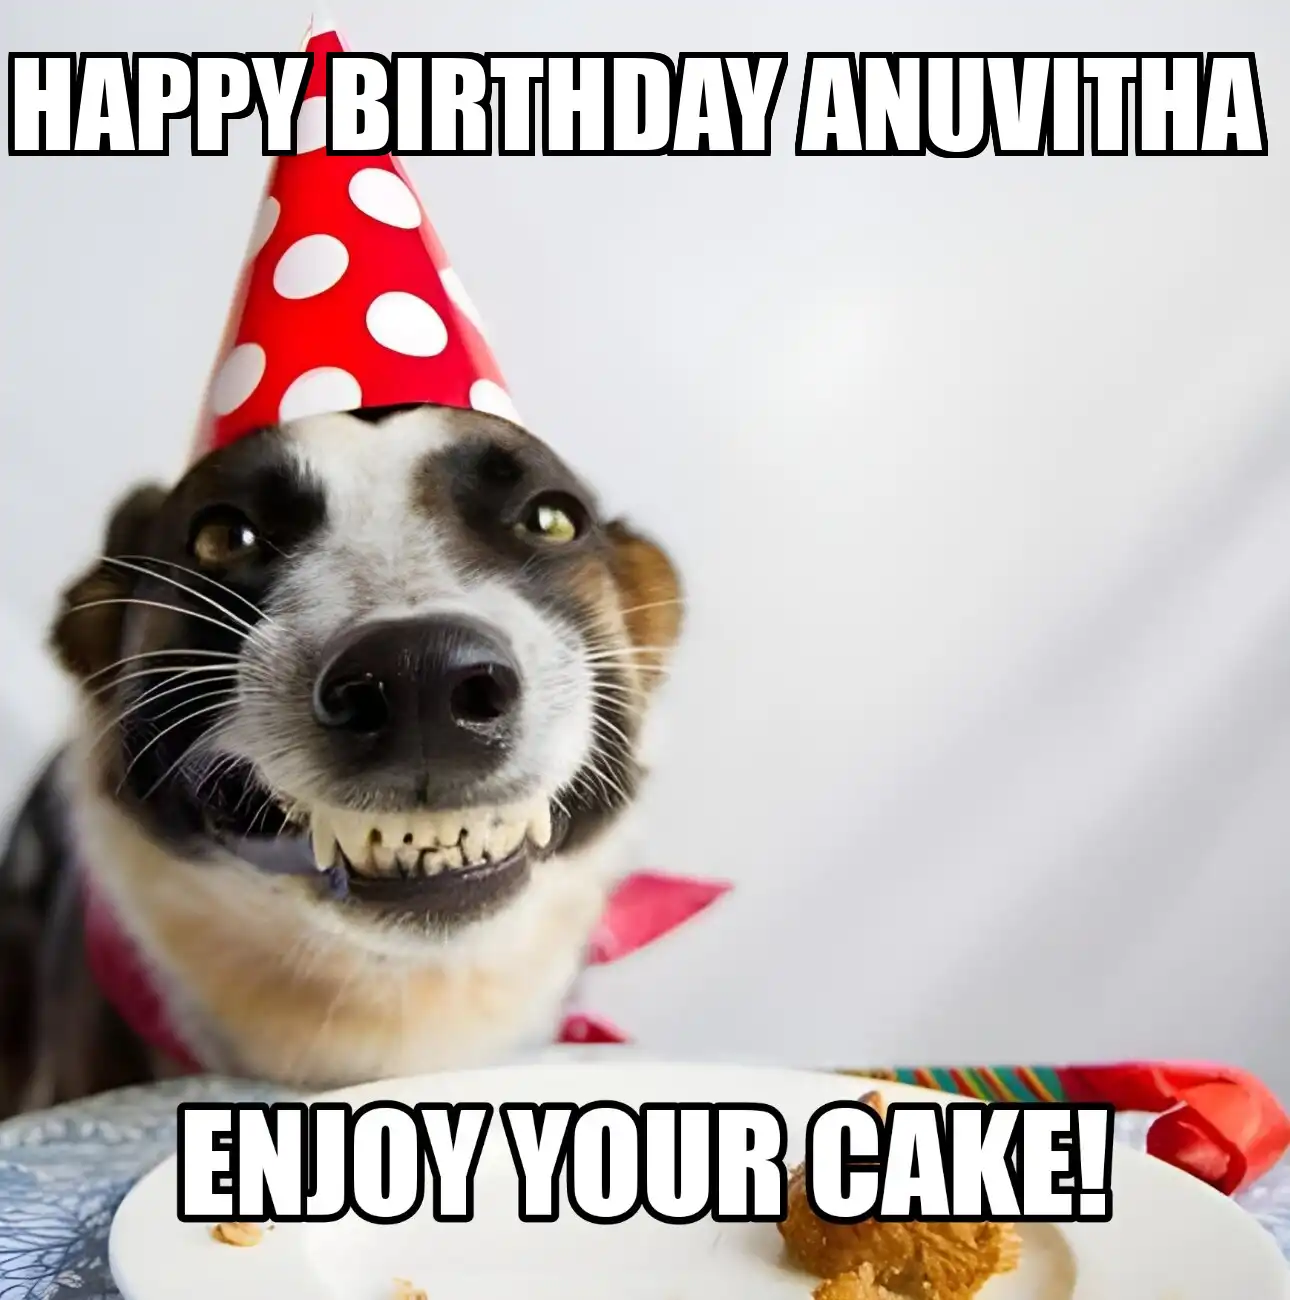 Happy Birthday Anuvitha Enjoy Your Cake Dog Meme